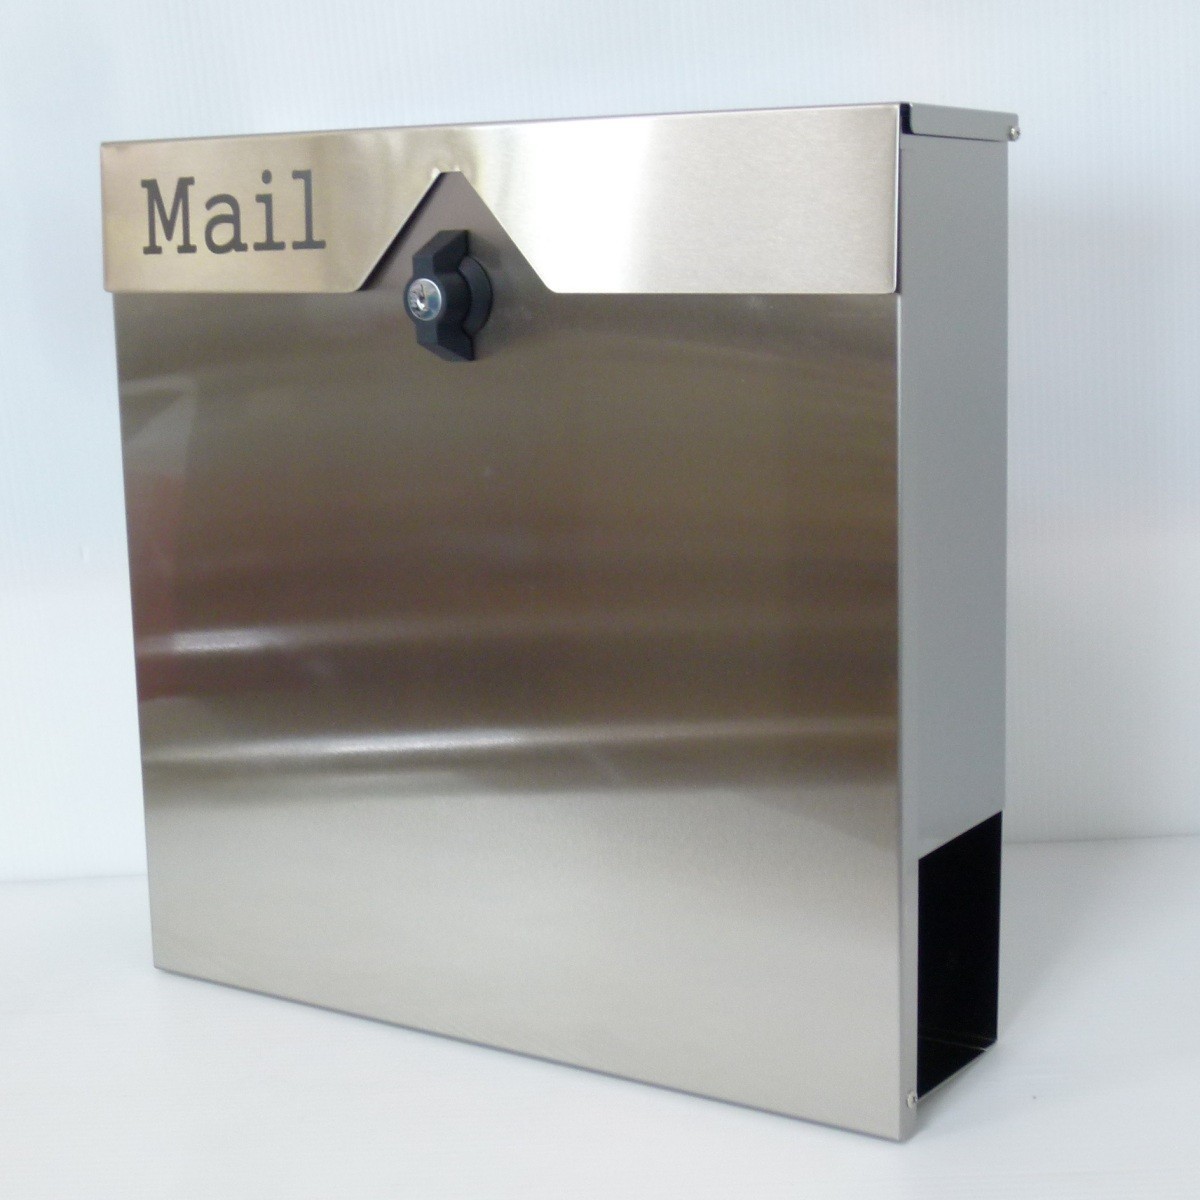 郵便ポスト郵便受けおしゃれかわいい人気北欧大型メールボックススタンド型プレミアムステンレスシルバーステンレス色ポストpm151s_画像2